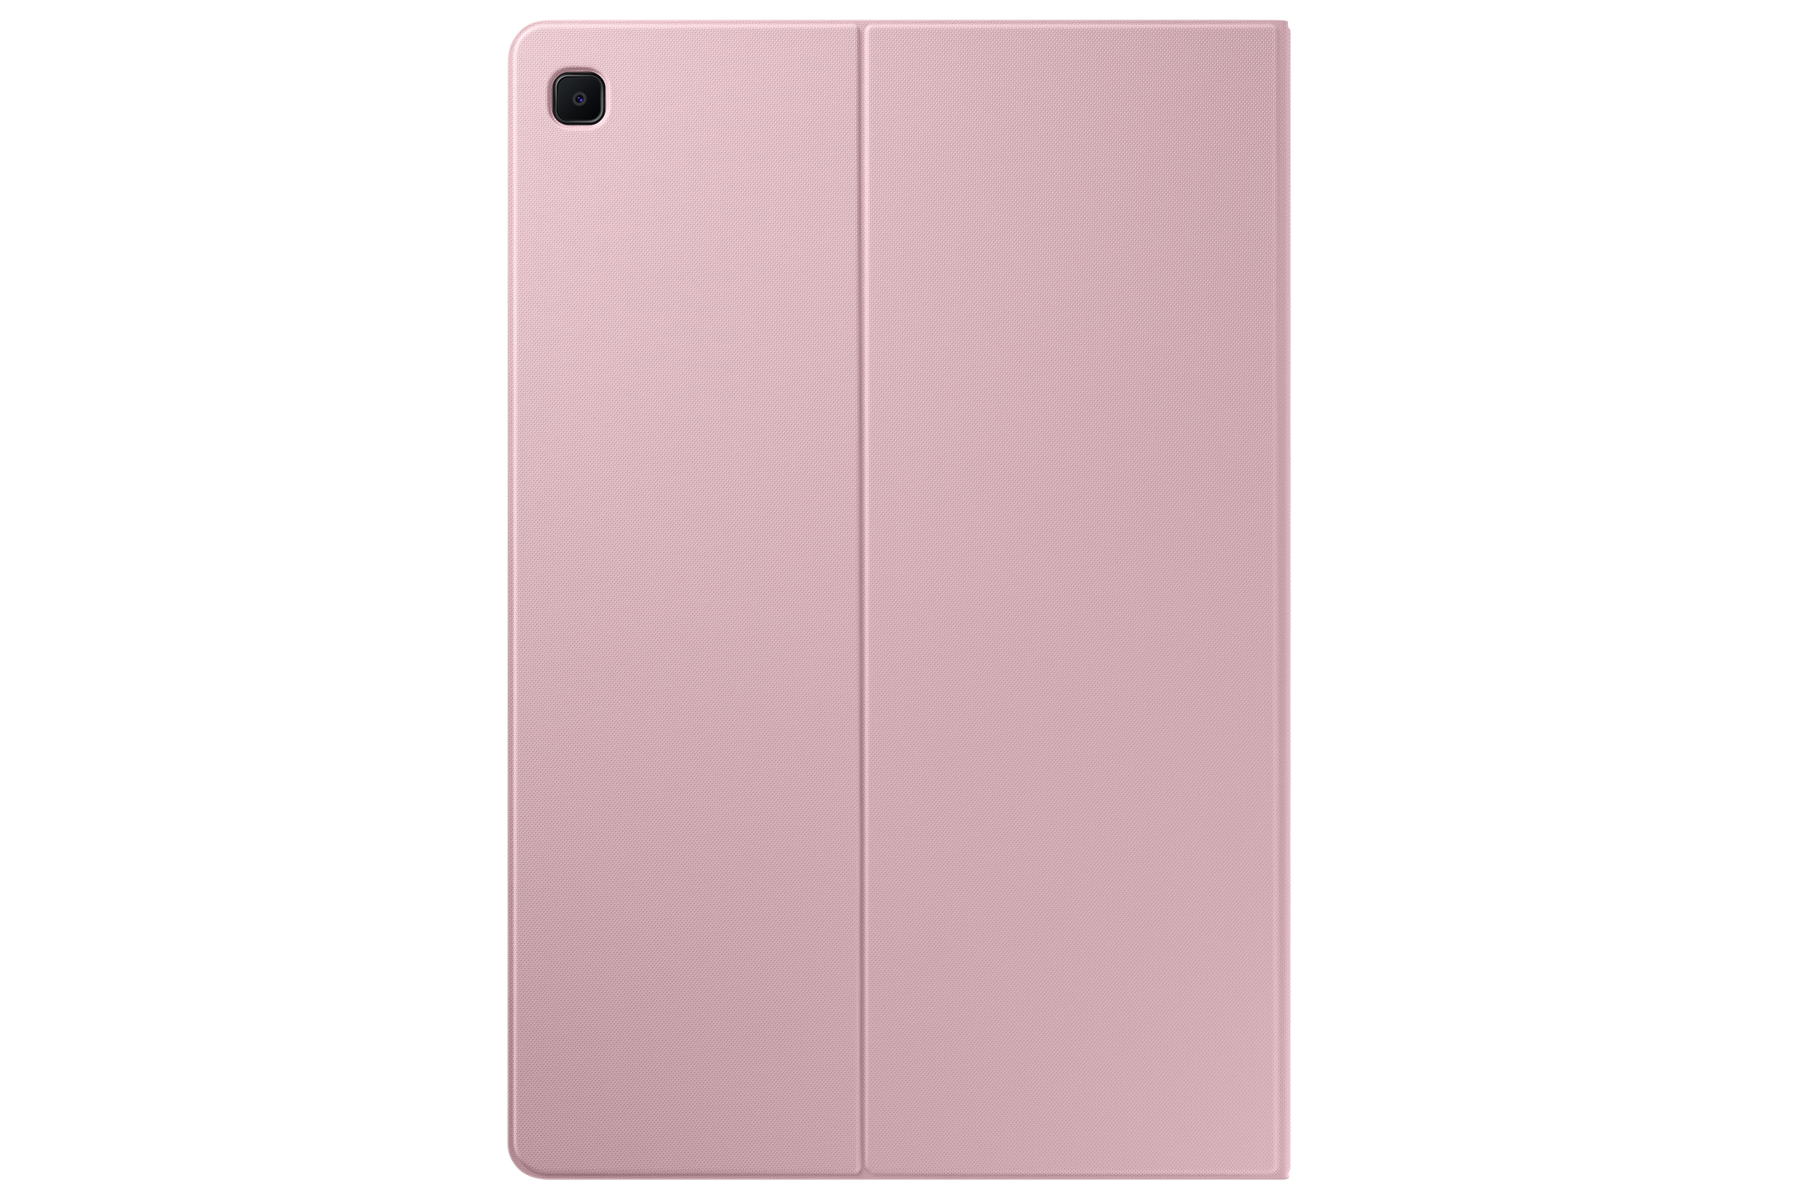 SAMSUNG EF-BPA610 Tablethülle Pink Bookcover für Kunststoff, Samsung